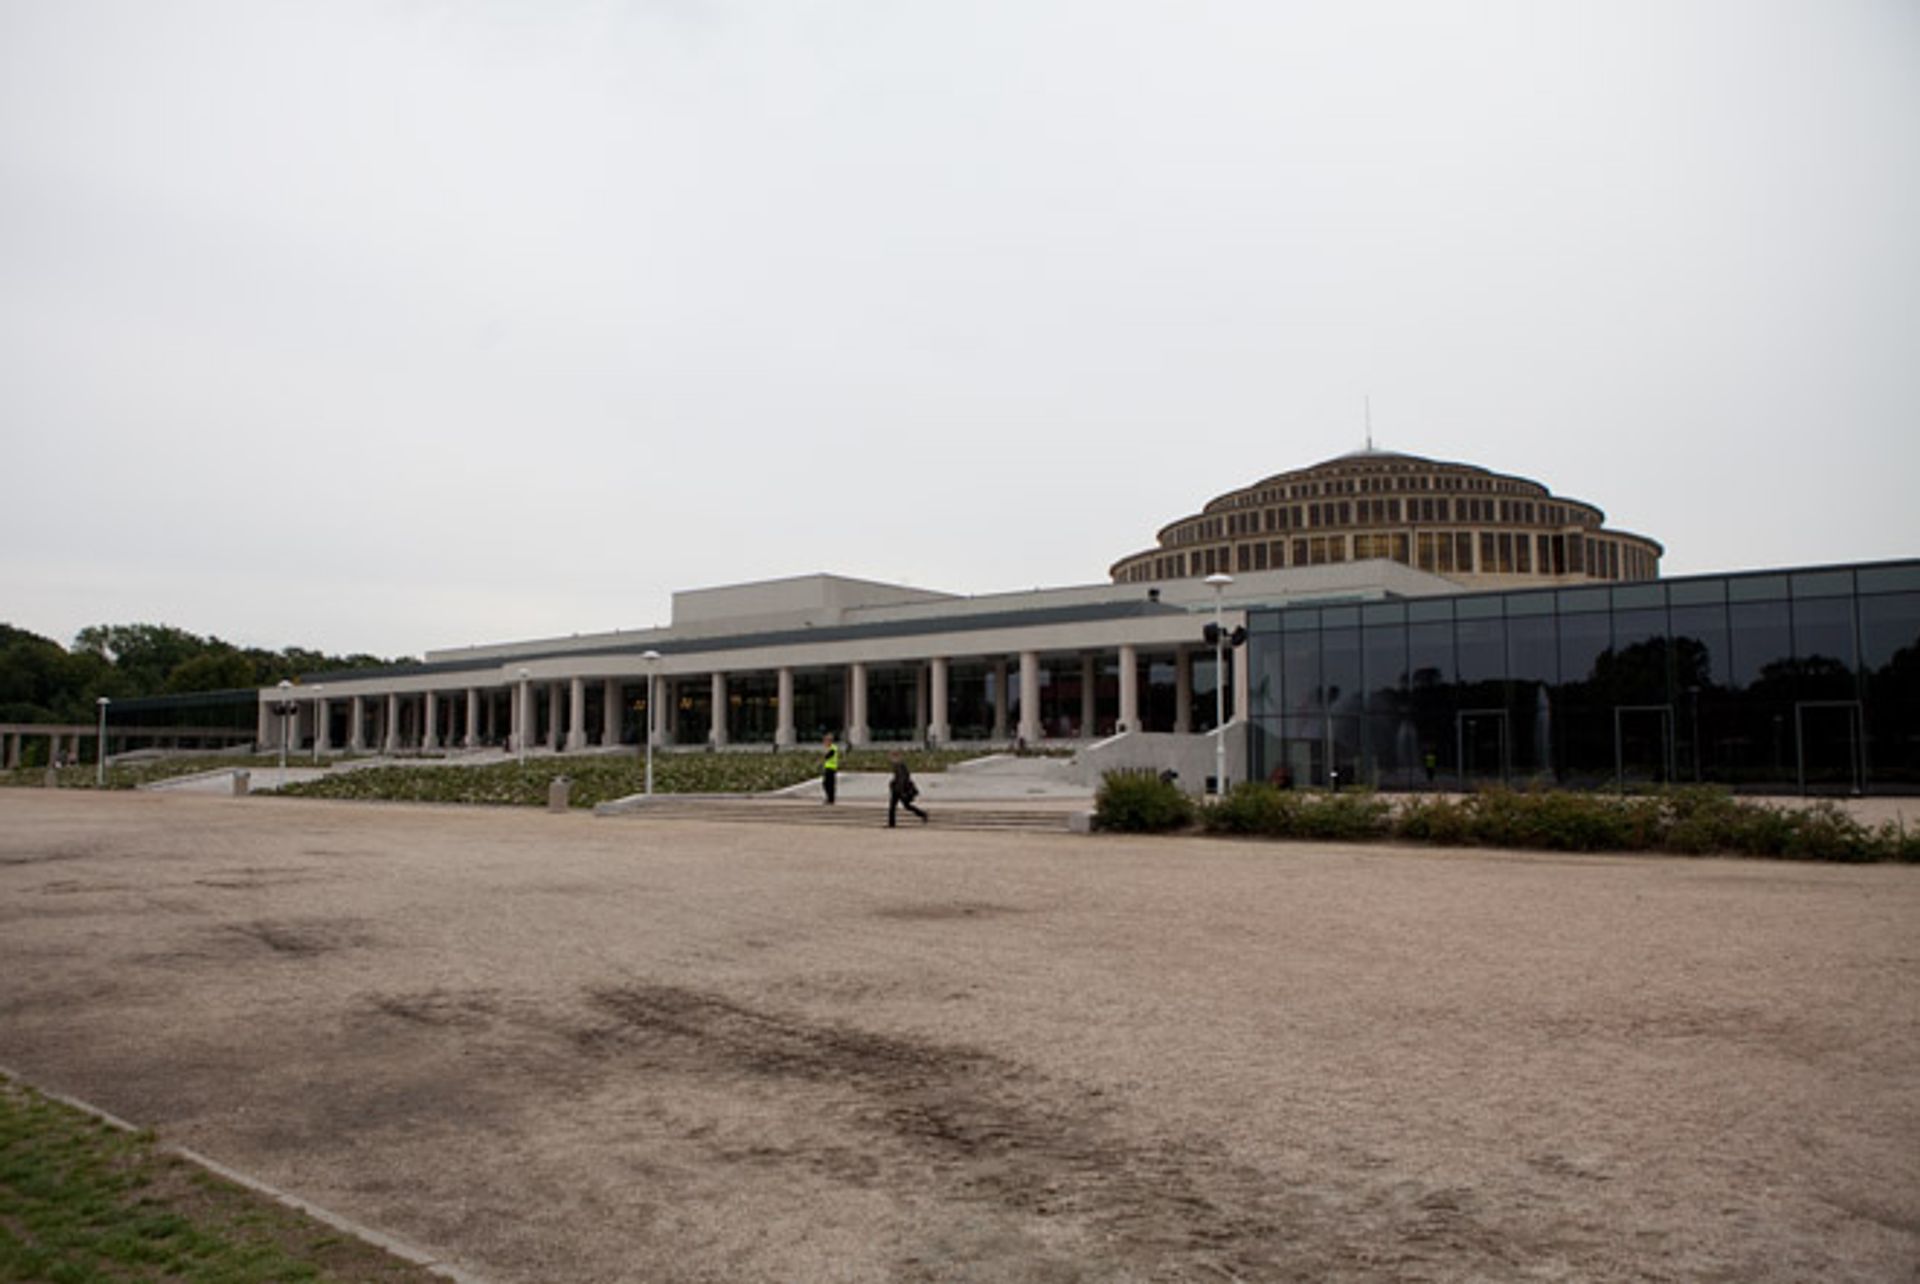  Zmiany w Hali Stulecia: Wrocławskie Centrum Kongresowe zamiast RCTB